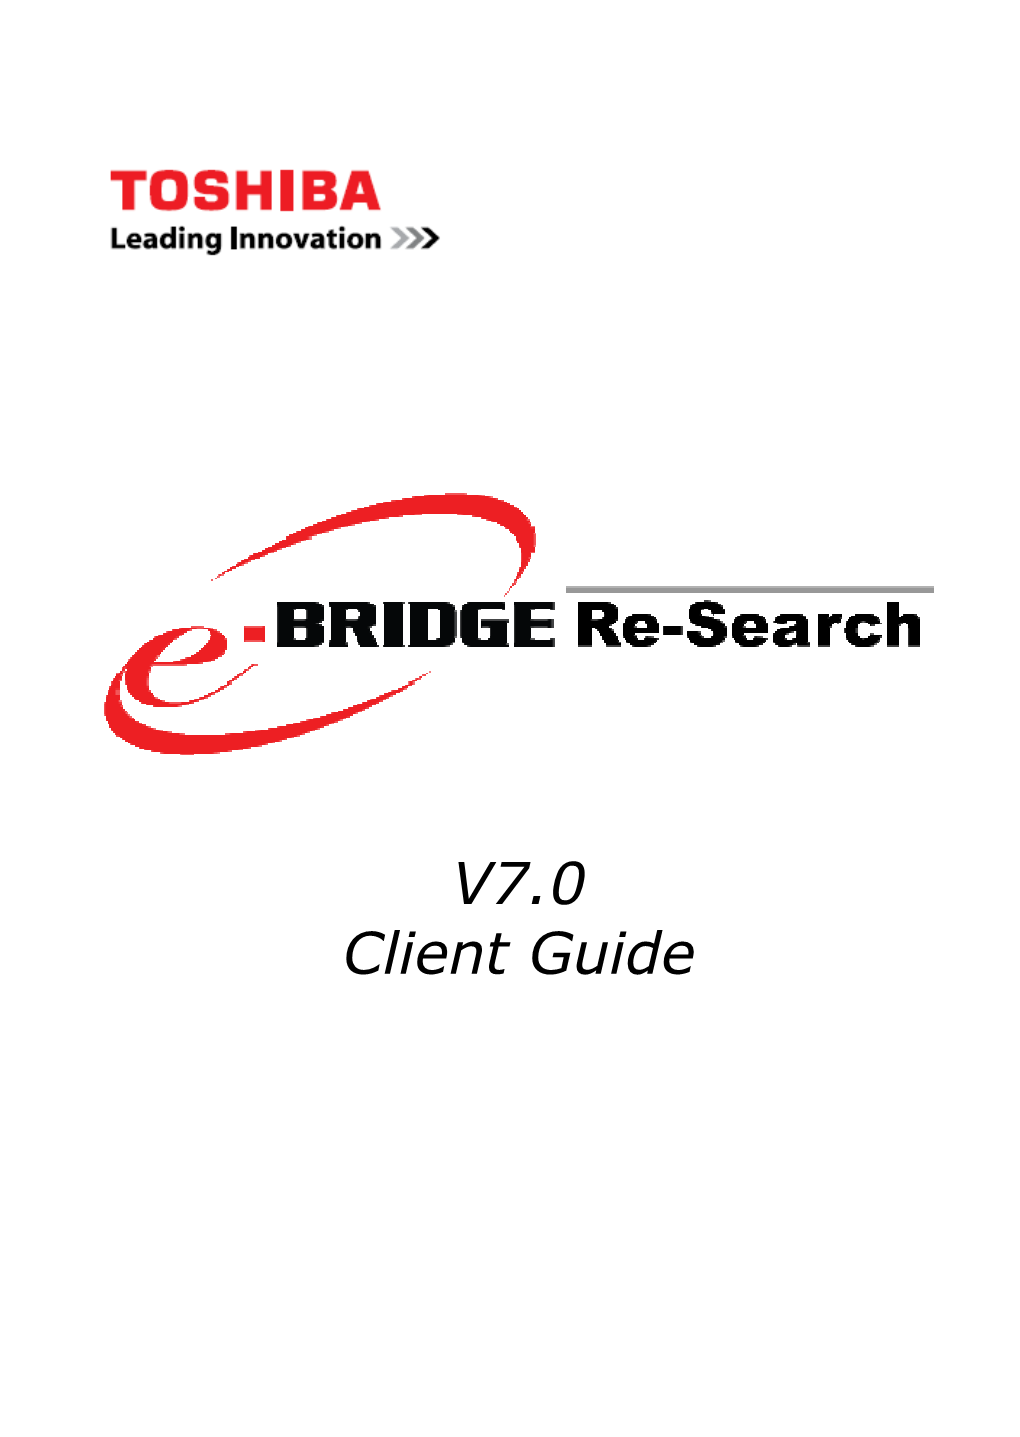 E-BRIDGE Re-Search Client Guide V7